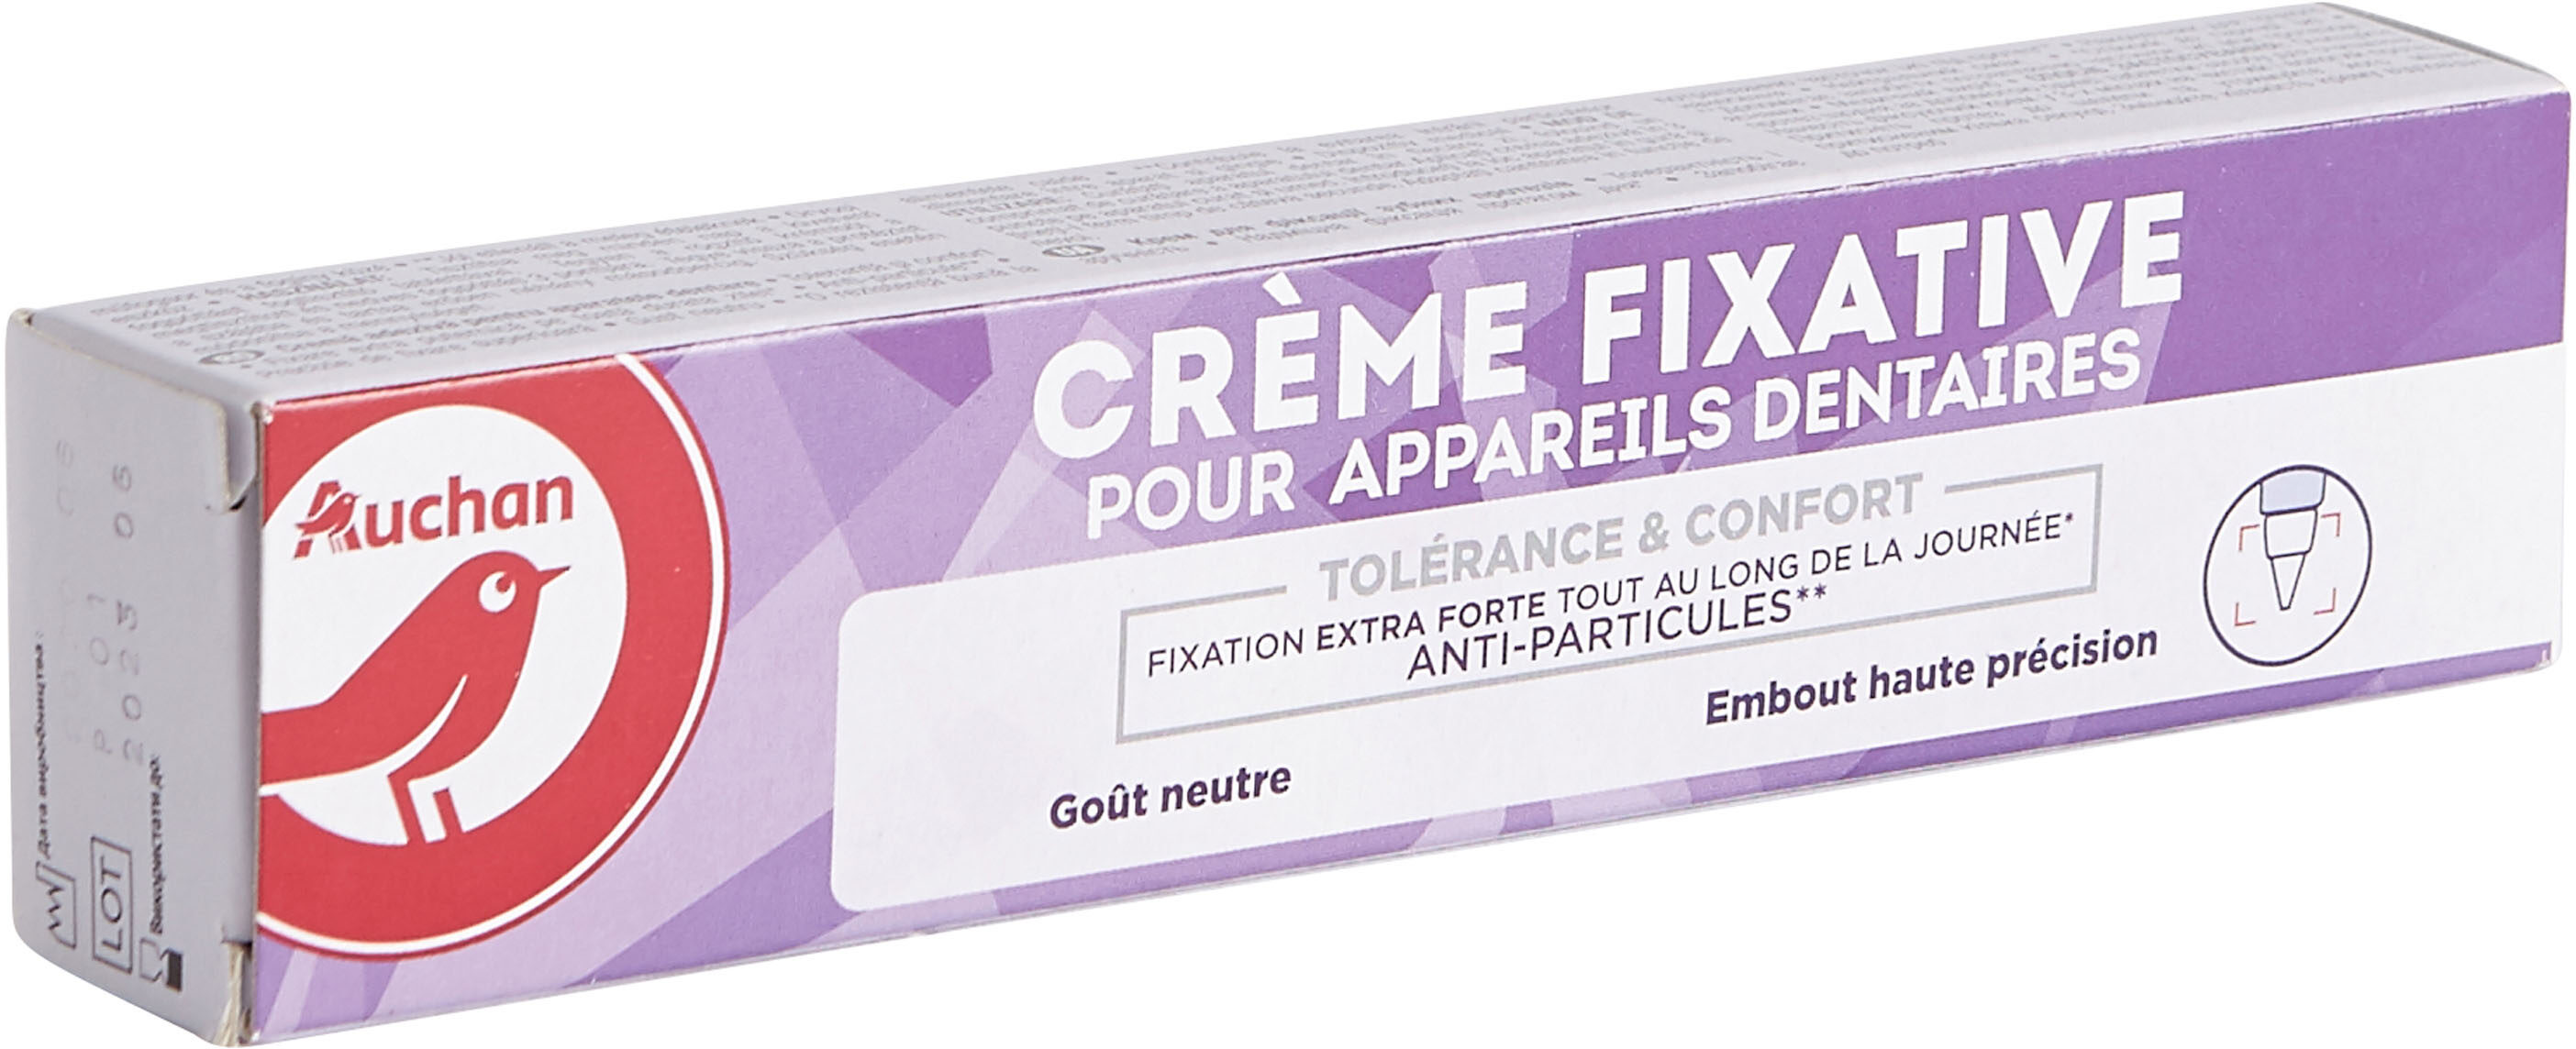 Crème fixative pour appareils dentaires - Produit - fr